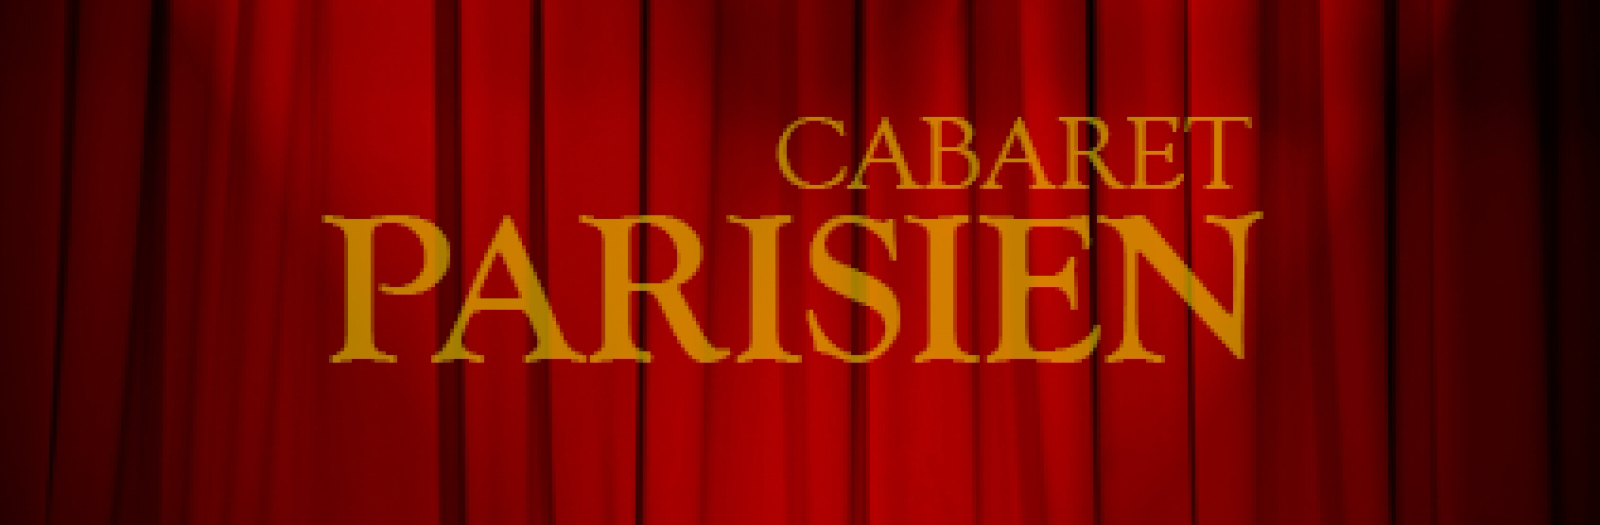 Cabaret Parisien